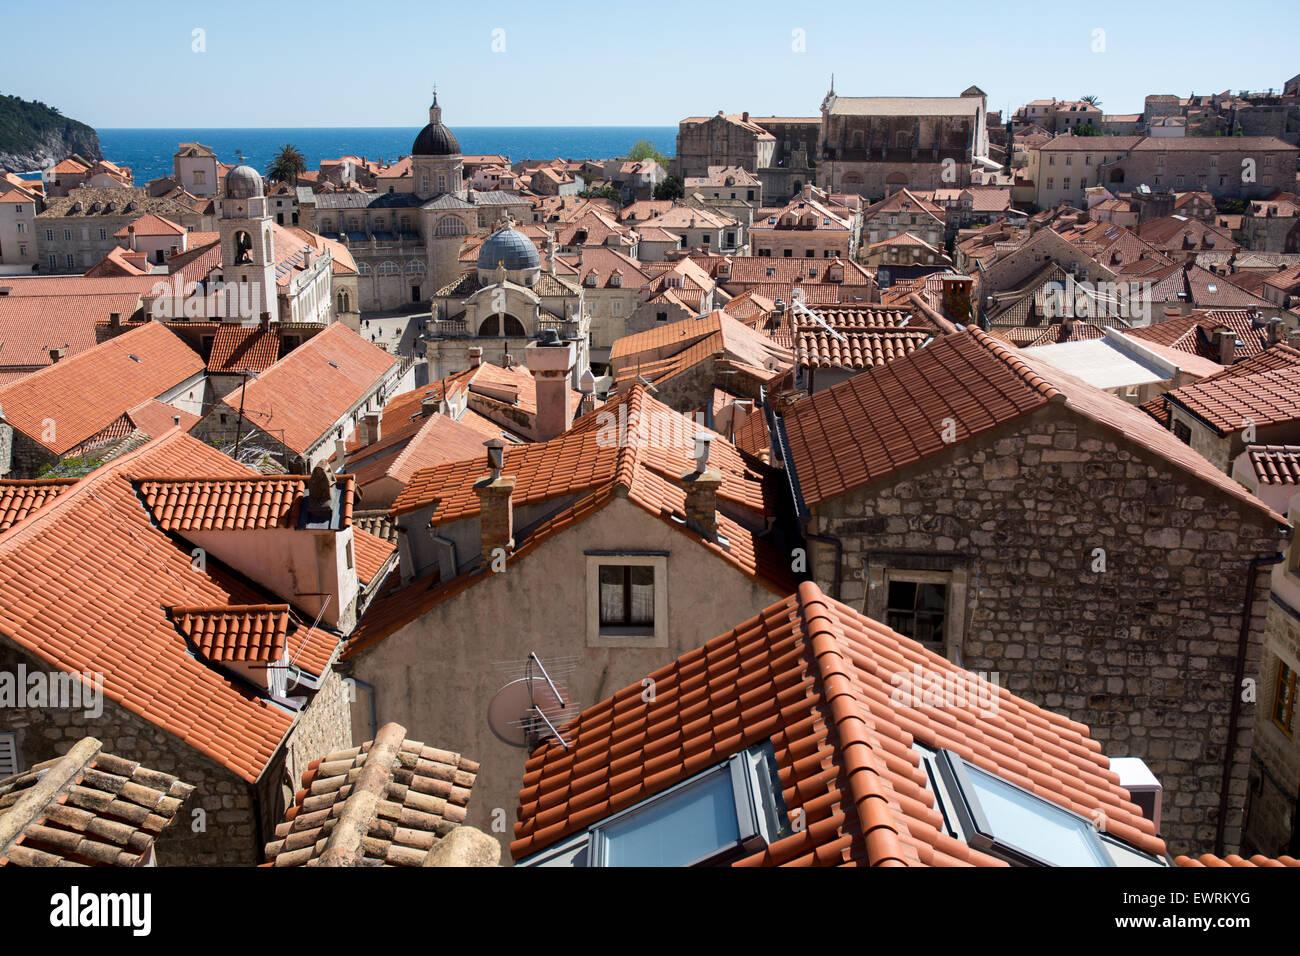 Scène sur le toit de terracota vieille ville avec tour de l'horloge-conseil du trésor de la cathédrale et de la tour de l'église St Blaise, Dubrovnik, Croatie Banque D'Images